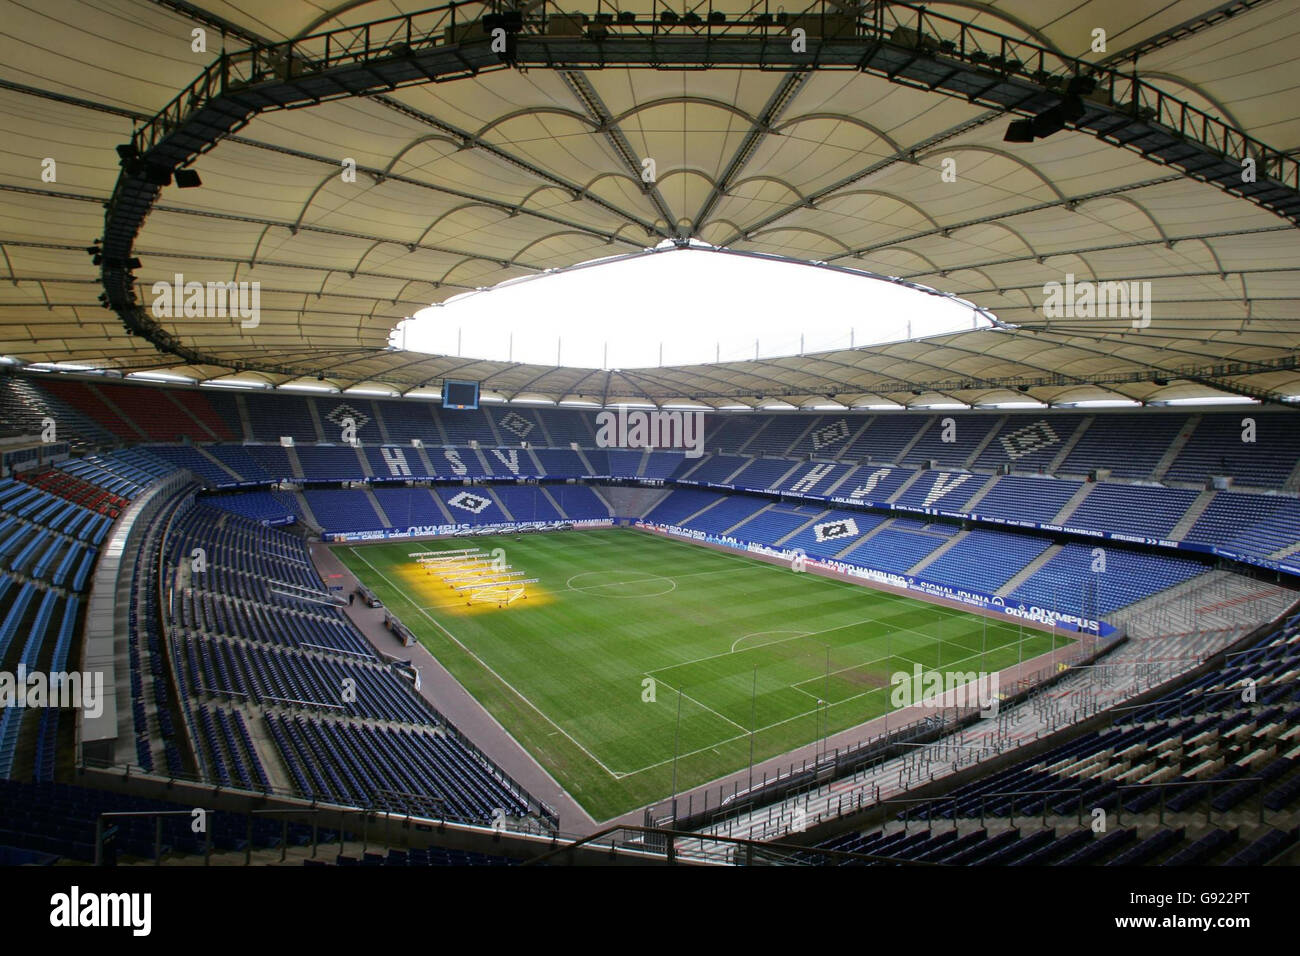 Vue générale photo datée du 08/12/2005 du Stadion Hamburg, à Hambourg, en Allemagne.Le stade accueillera la coupe du monde de 2006.APPUYEZ SUR ASSOCIATION photo.Le crédit photo devrait se lire: Nick Potts/PA. Banque D'Images